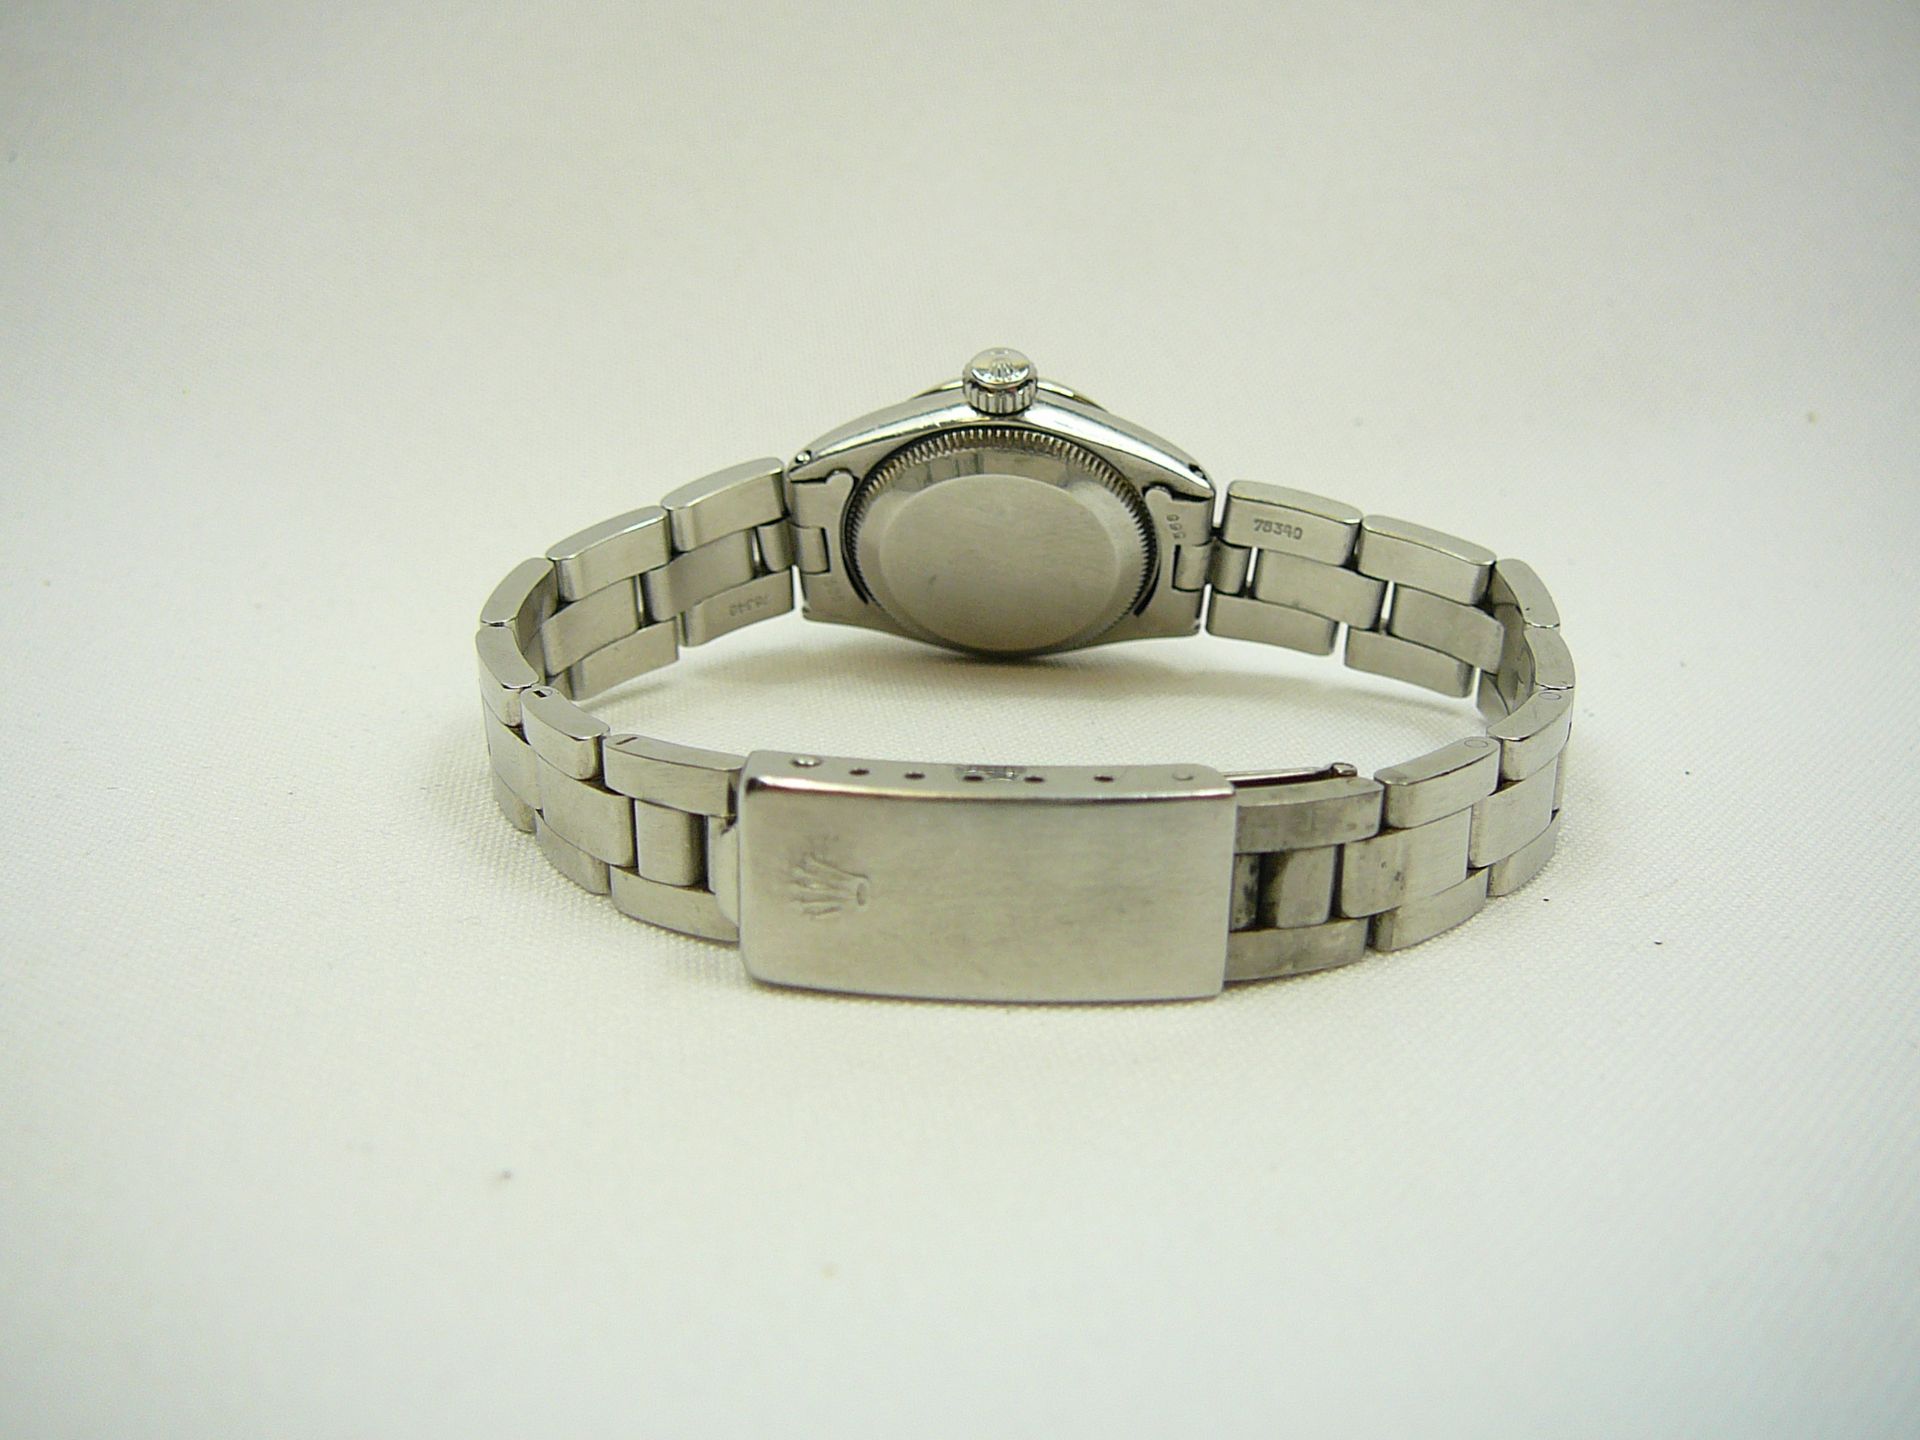 Ladies Vintage Rolex Wrist Watch - Image 6 of 7